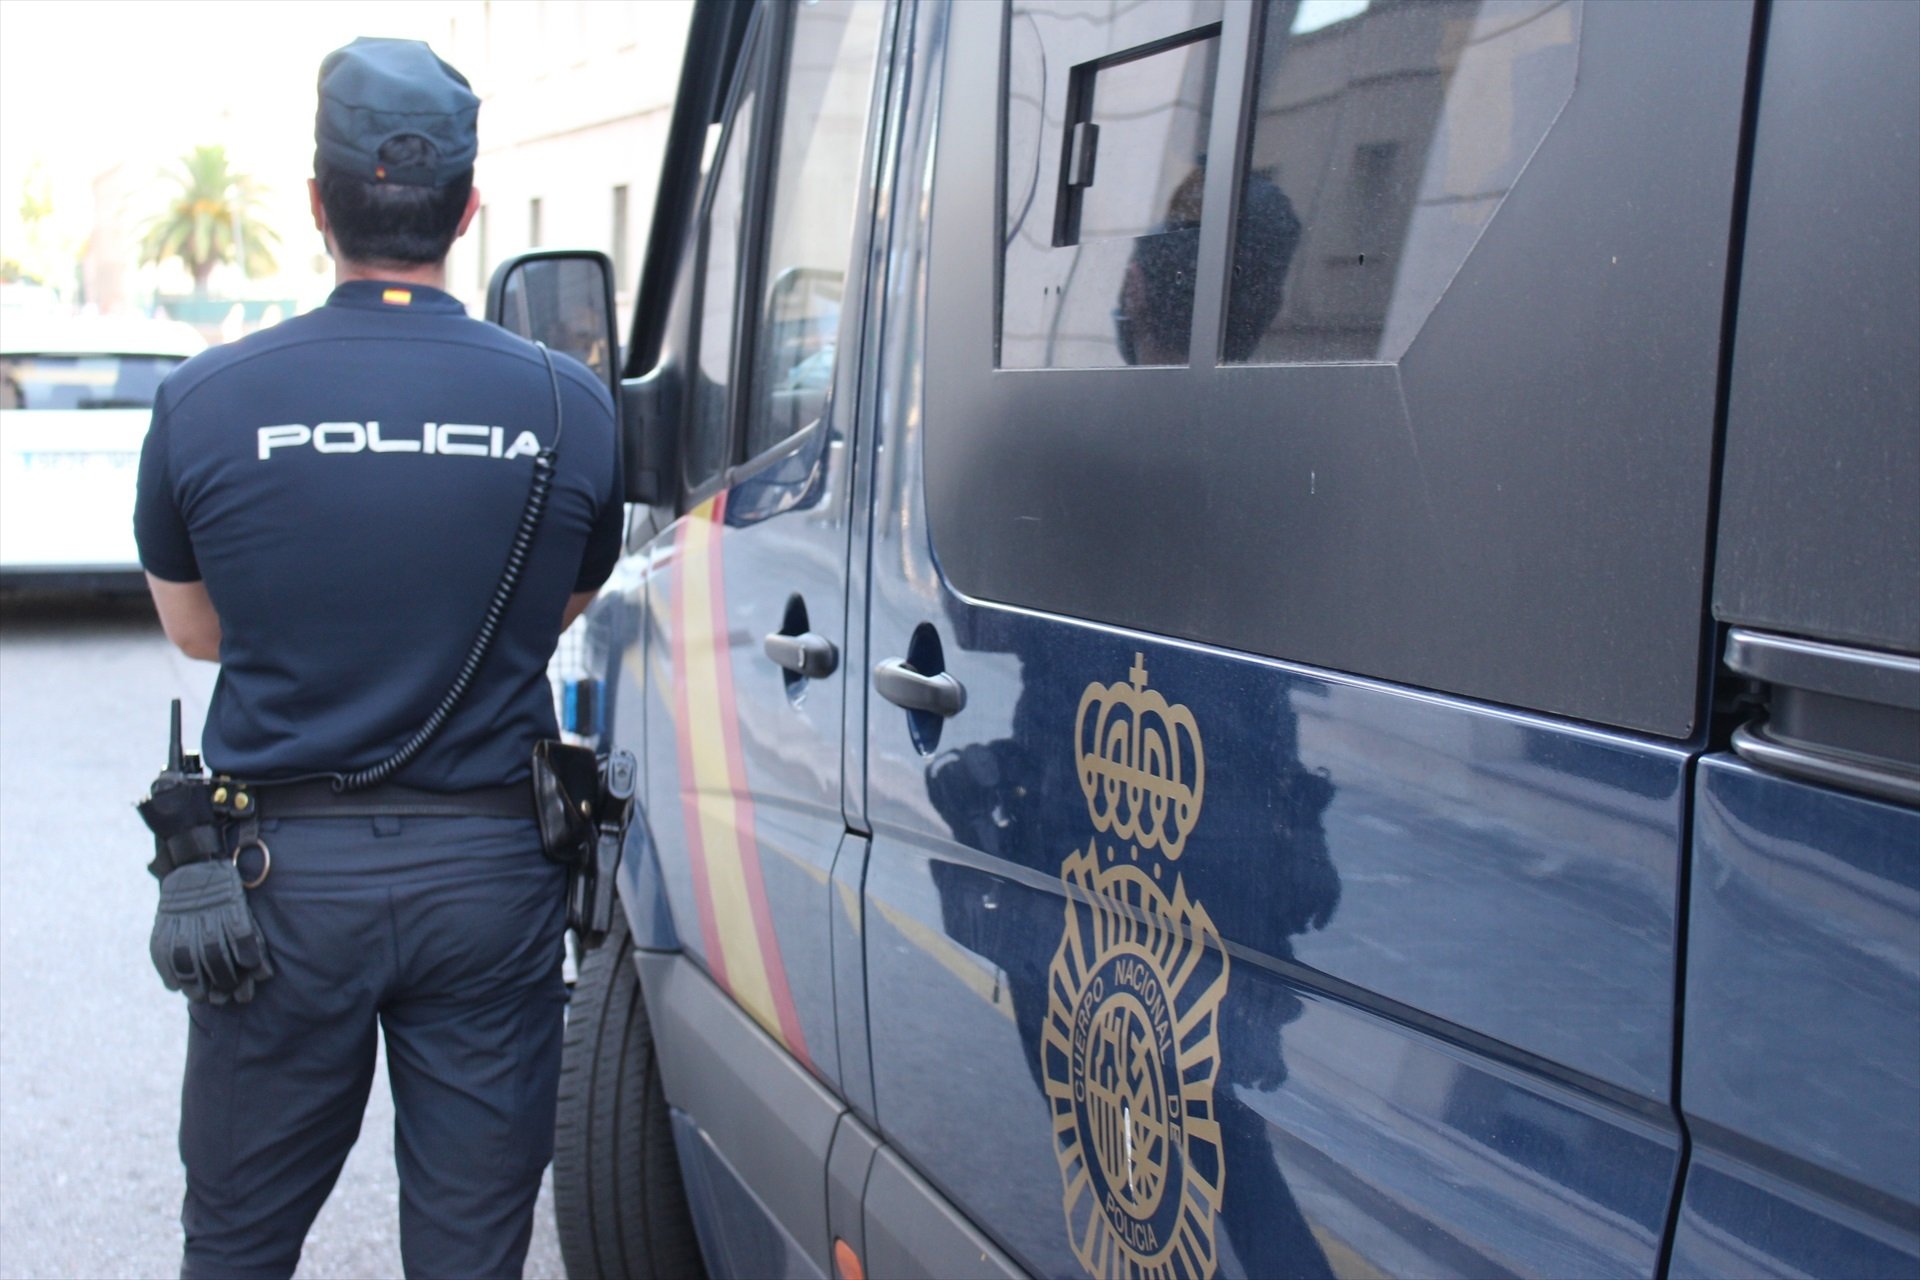 Un agent de la Policia Nacional al costat d'una furgoneta del cos, en una imatge d'arxiu / POLICIA NACIONAL